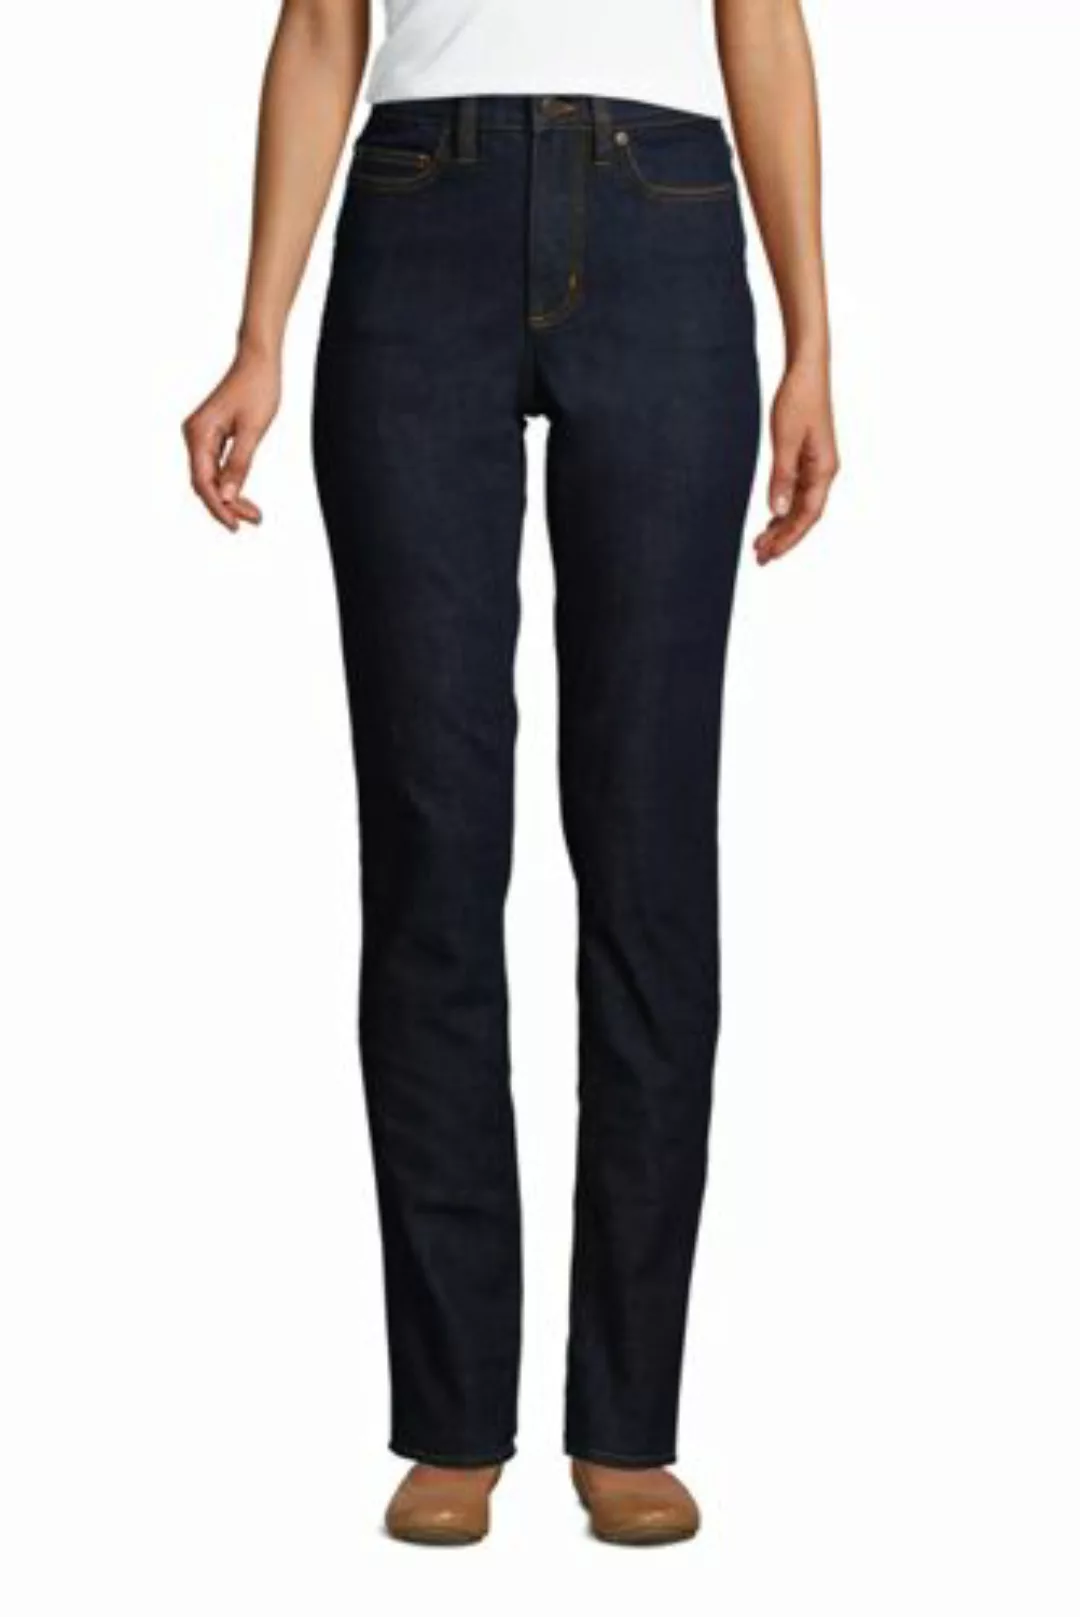 Shaping Jeans Straight Fit High Waist in Petite-Größe, Damen, Größe: 36 28 günstig online kaufen